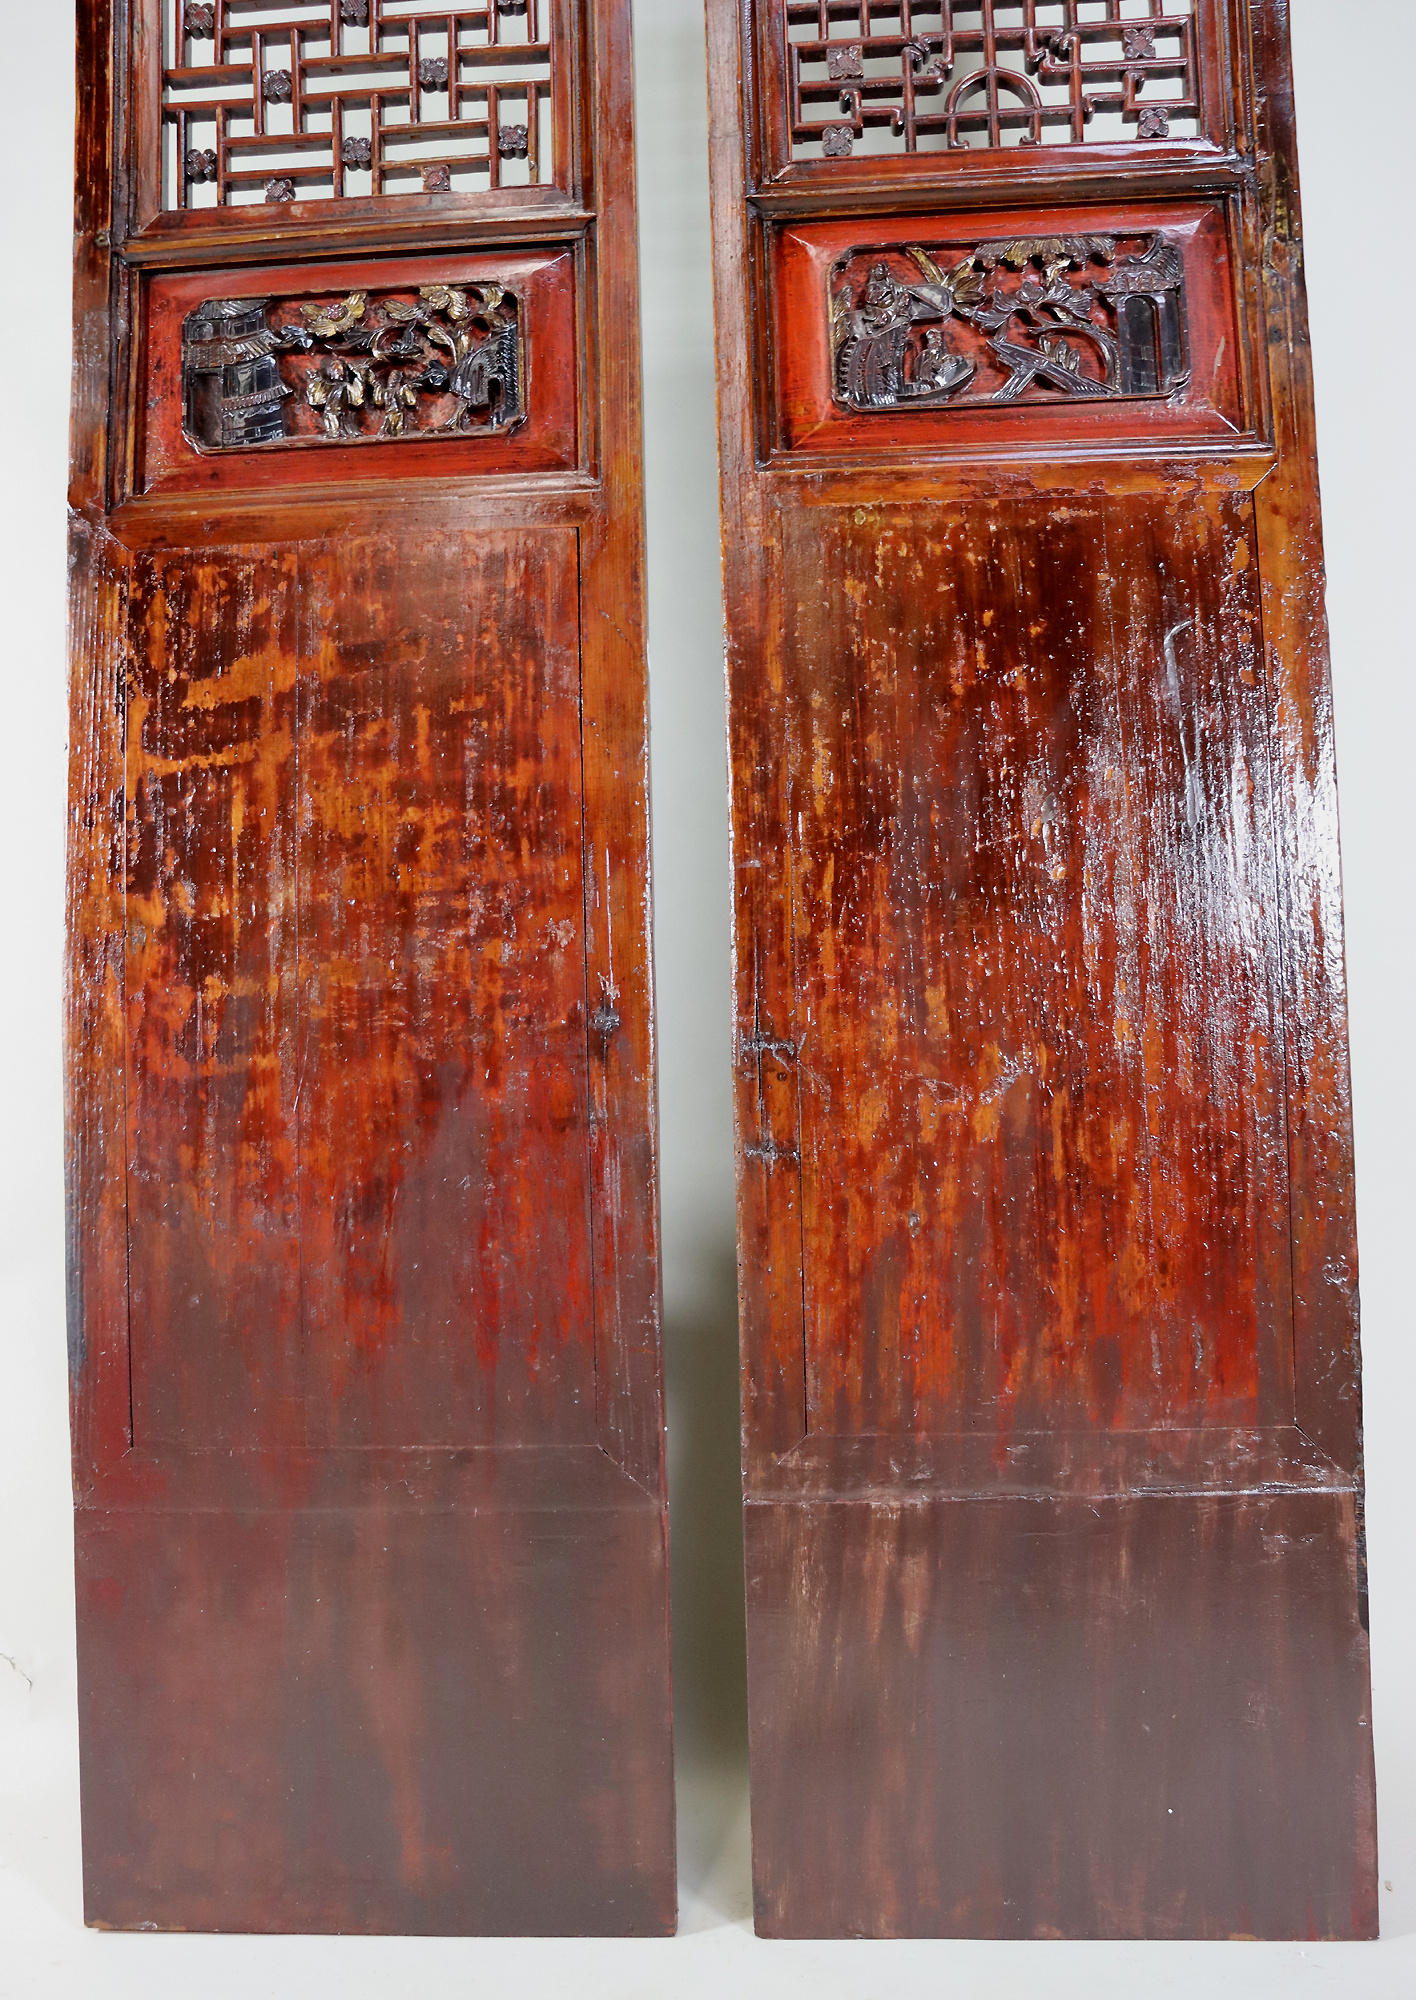 a couple 225x50 cm Antique orient solid wood handmade and hand carved  sliding door room door Barndoors door panel from Japan